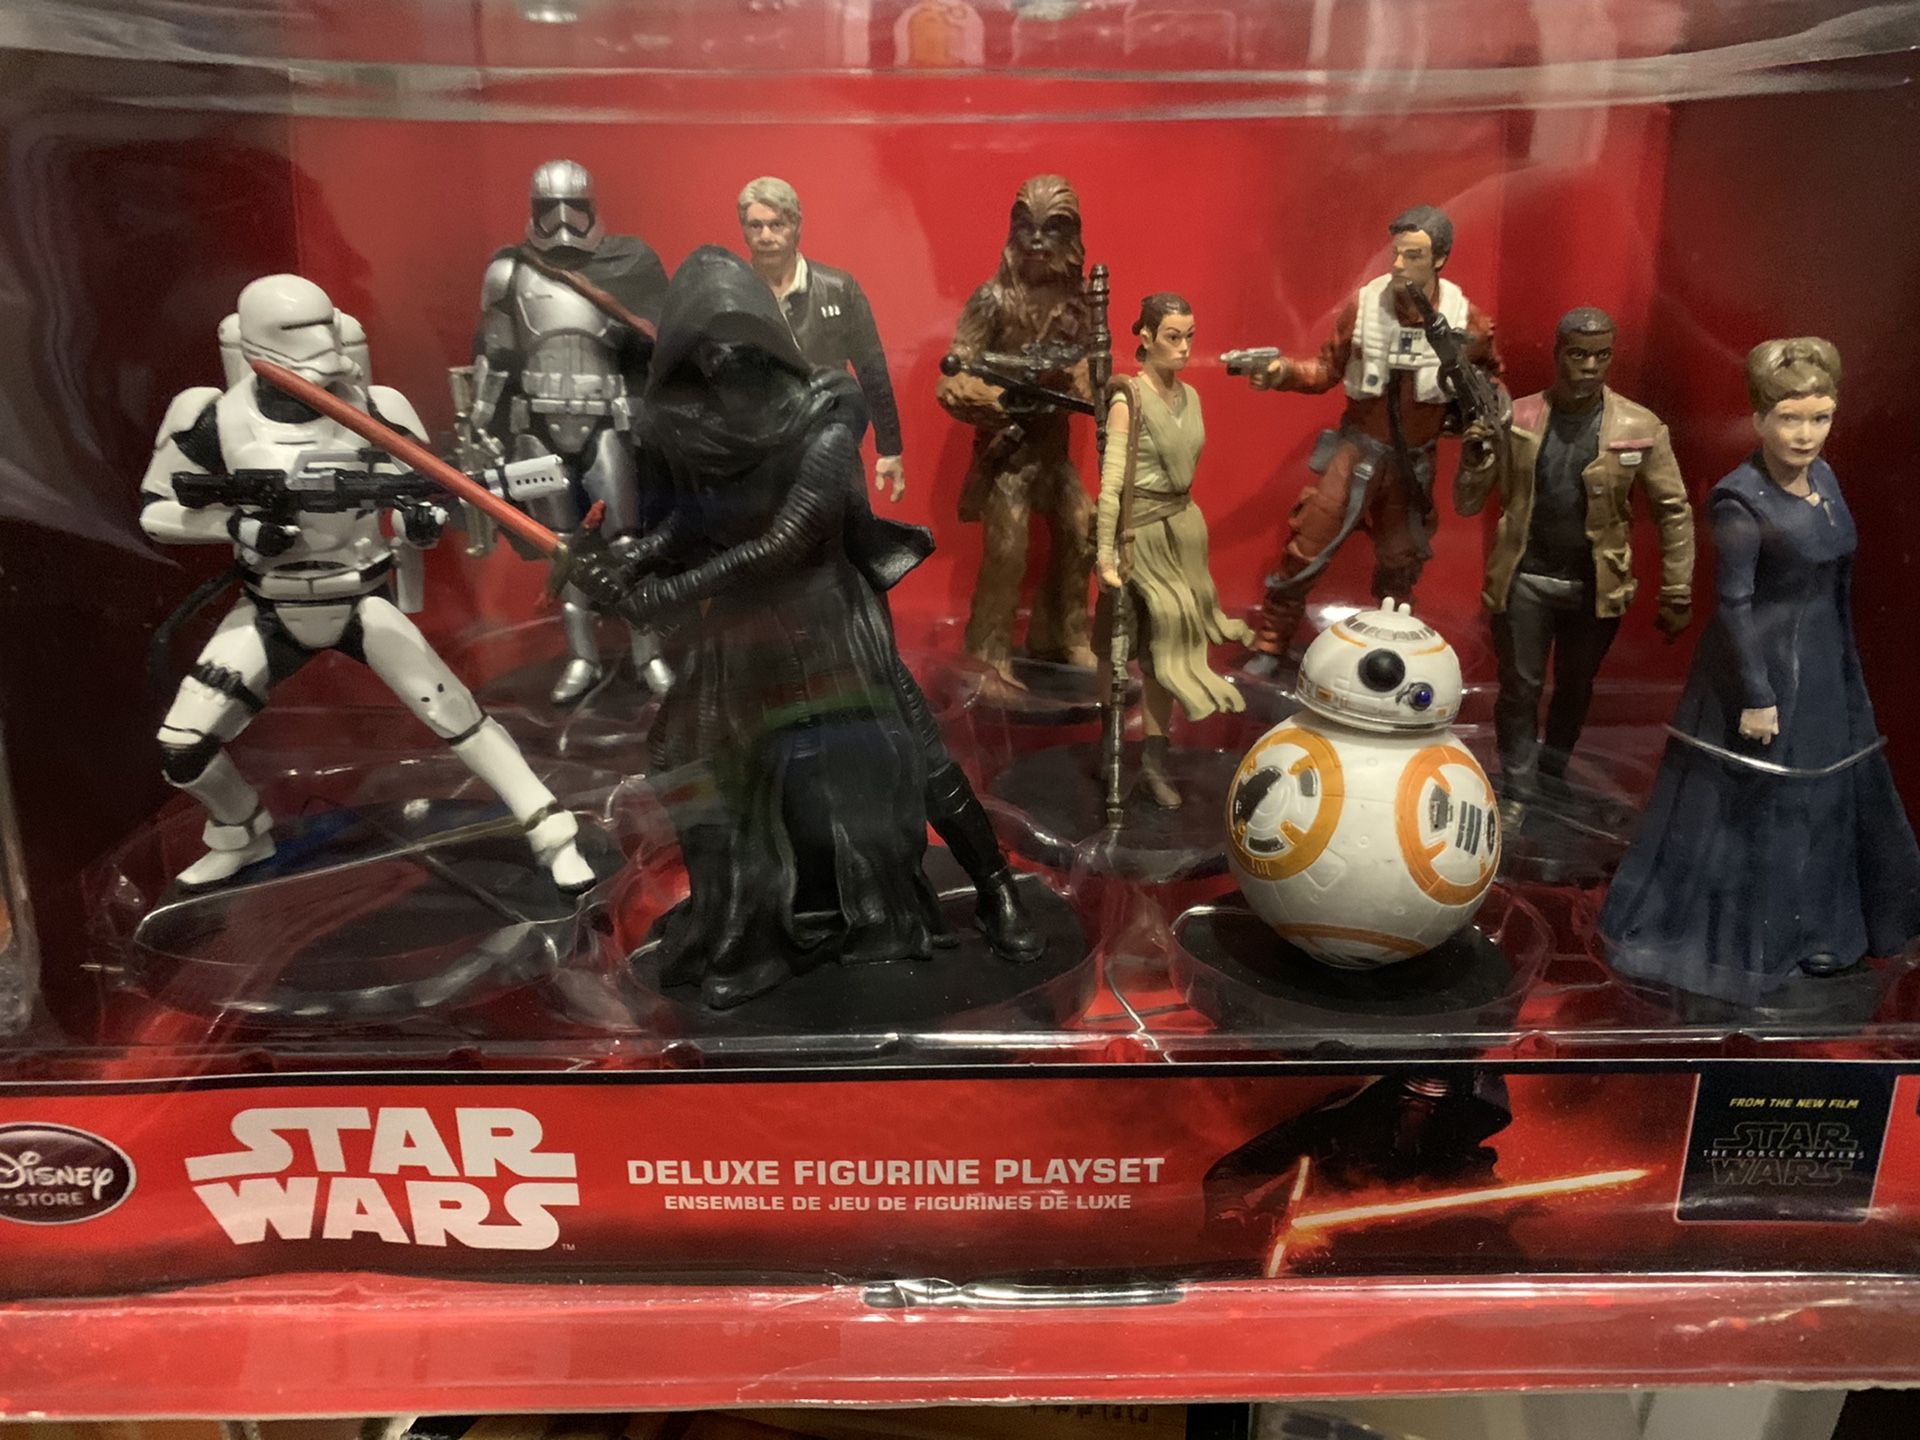 Star Wars deluxe figurine playset